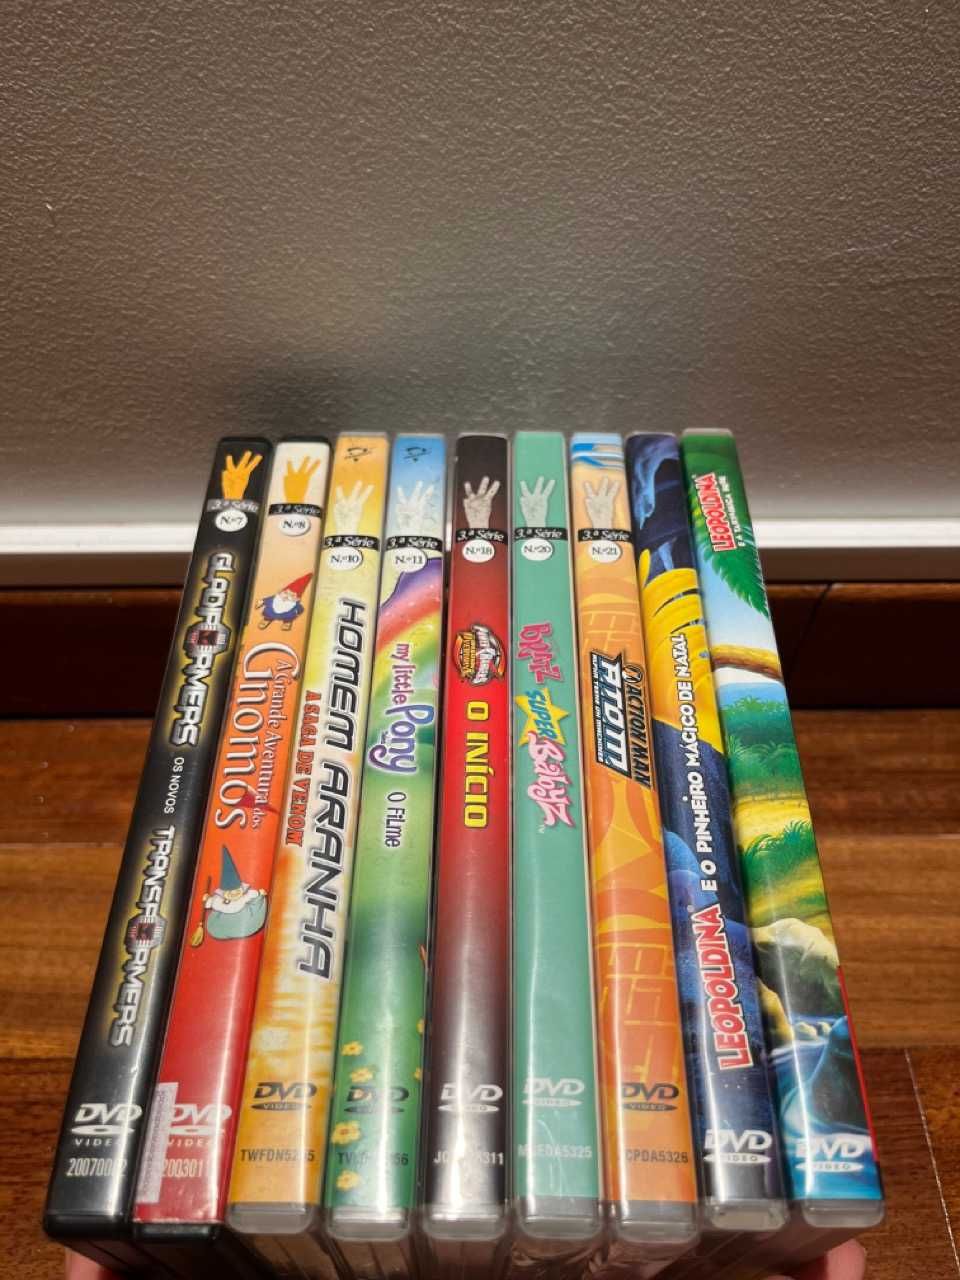 Vários DVDs Originais (várias categorias)